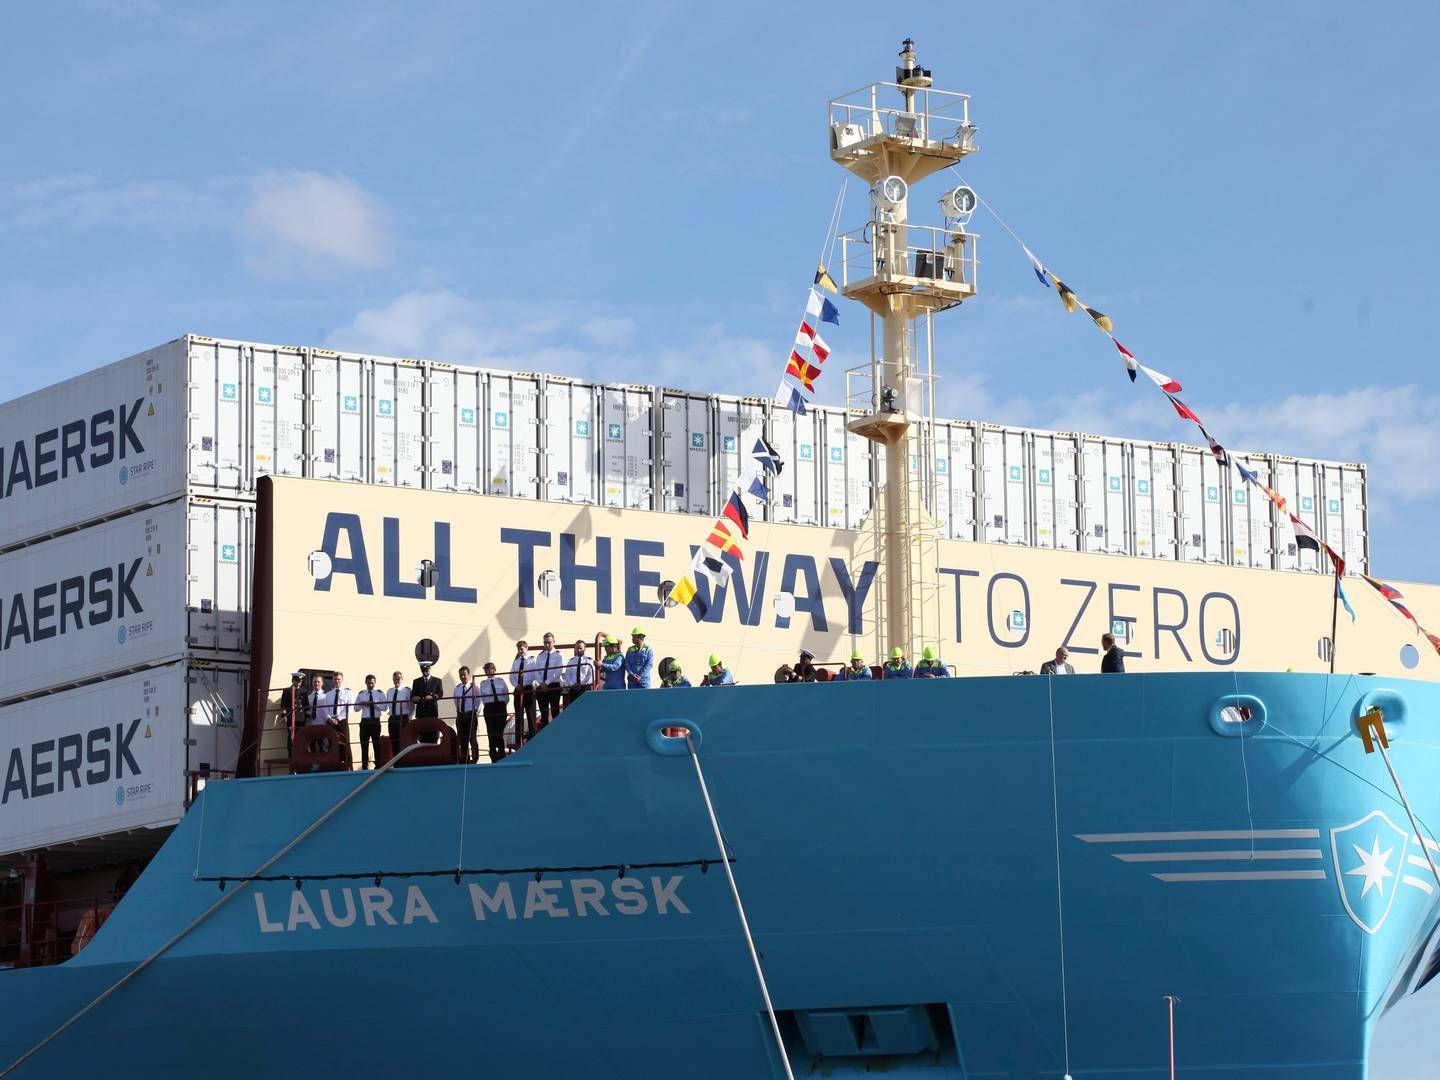 Rederiet Mærsks første containerskib, Laura Mærsk, til grøn metanol. | Foto: Steffen Trumpf/AP/Ritzau Scanpix